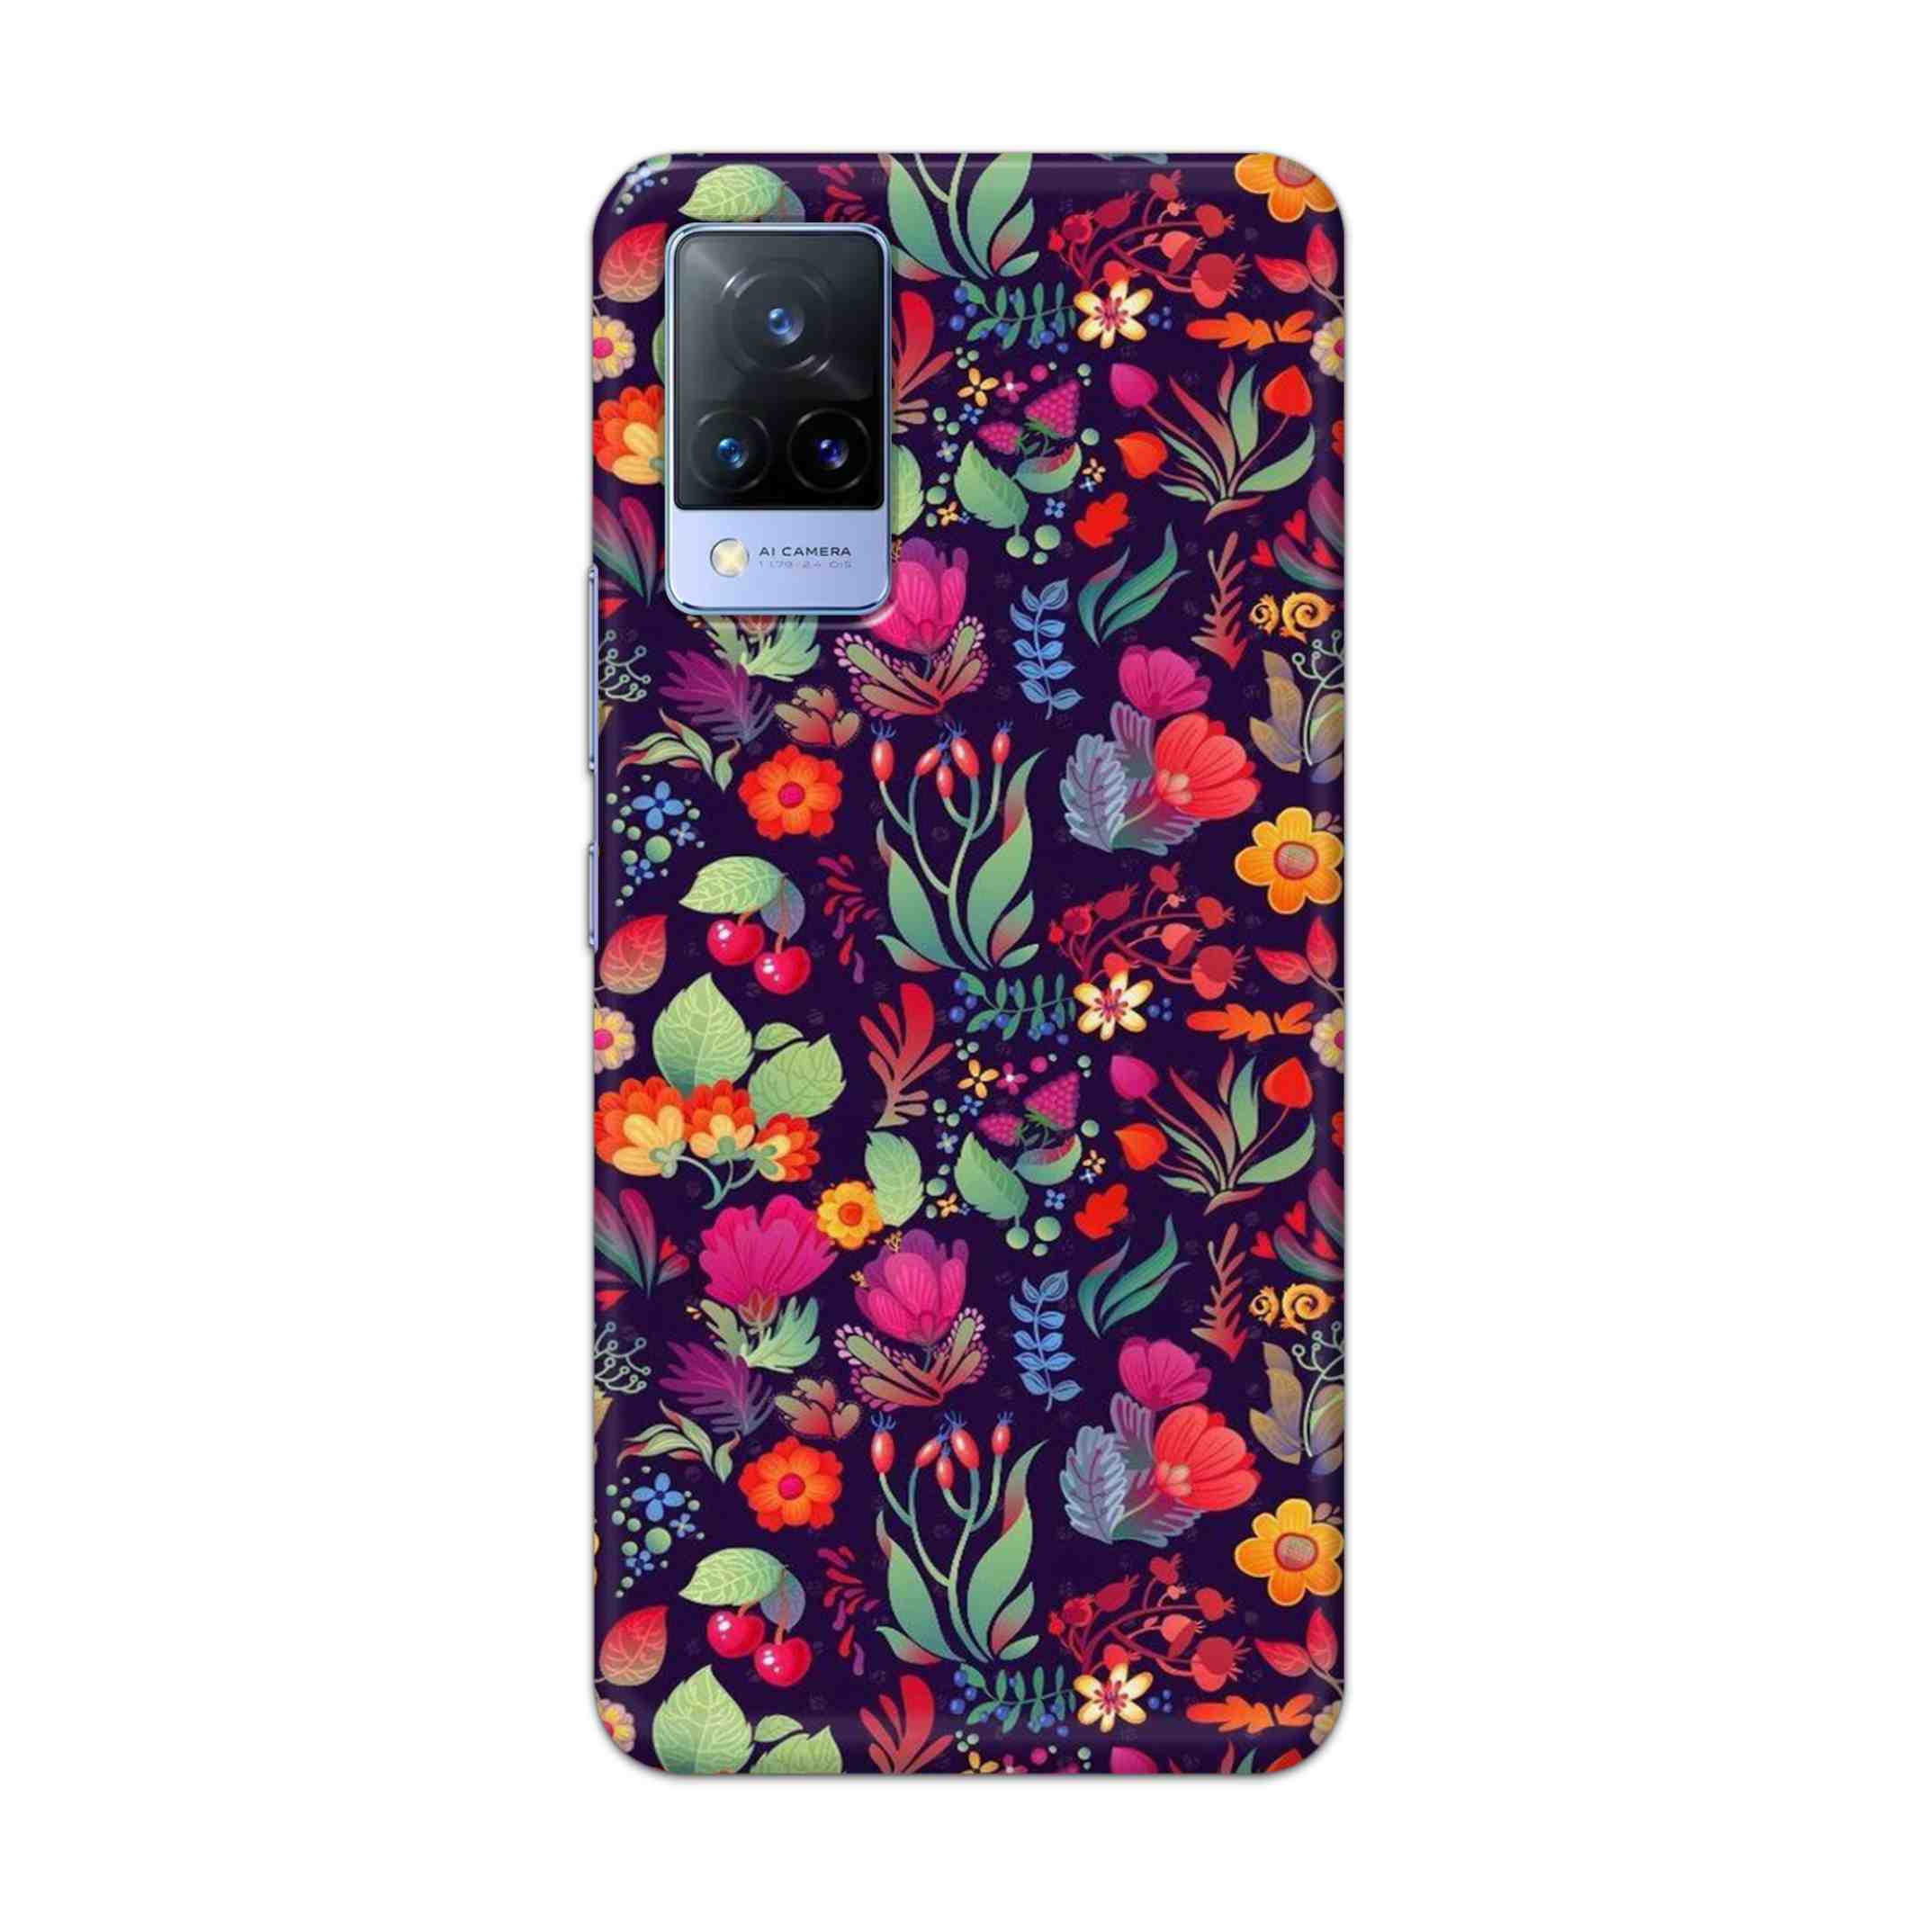 Buy Fruits Flower Hard Back Mobile Phone Case Cover For Vivo V21e Online